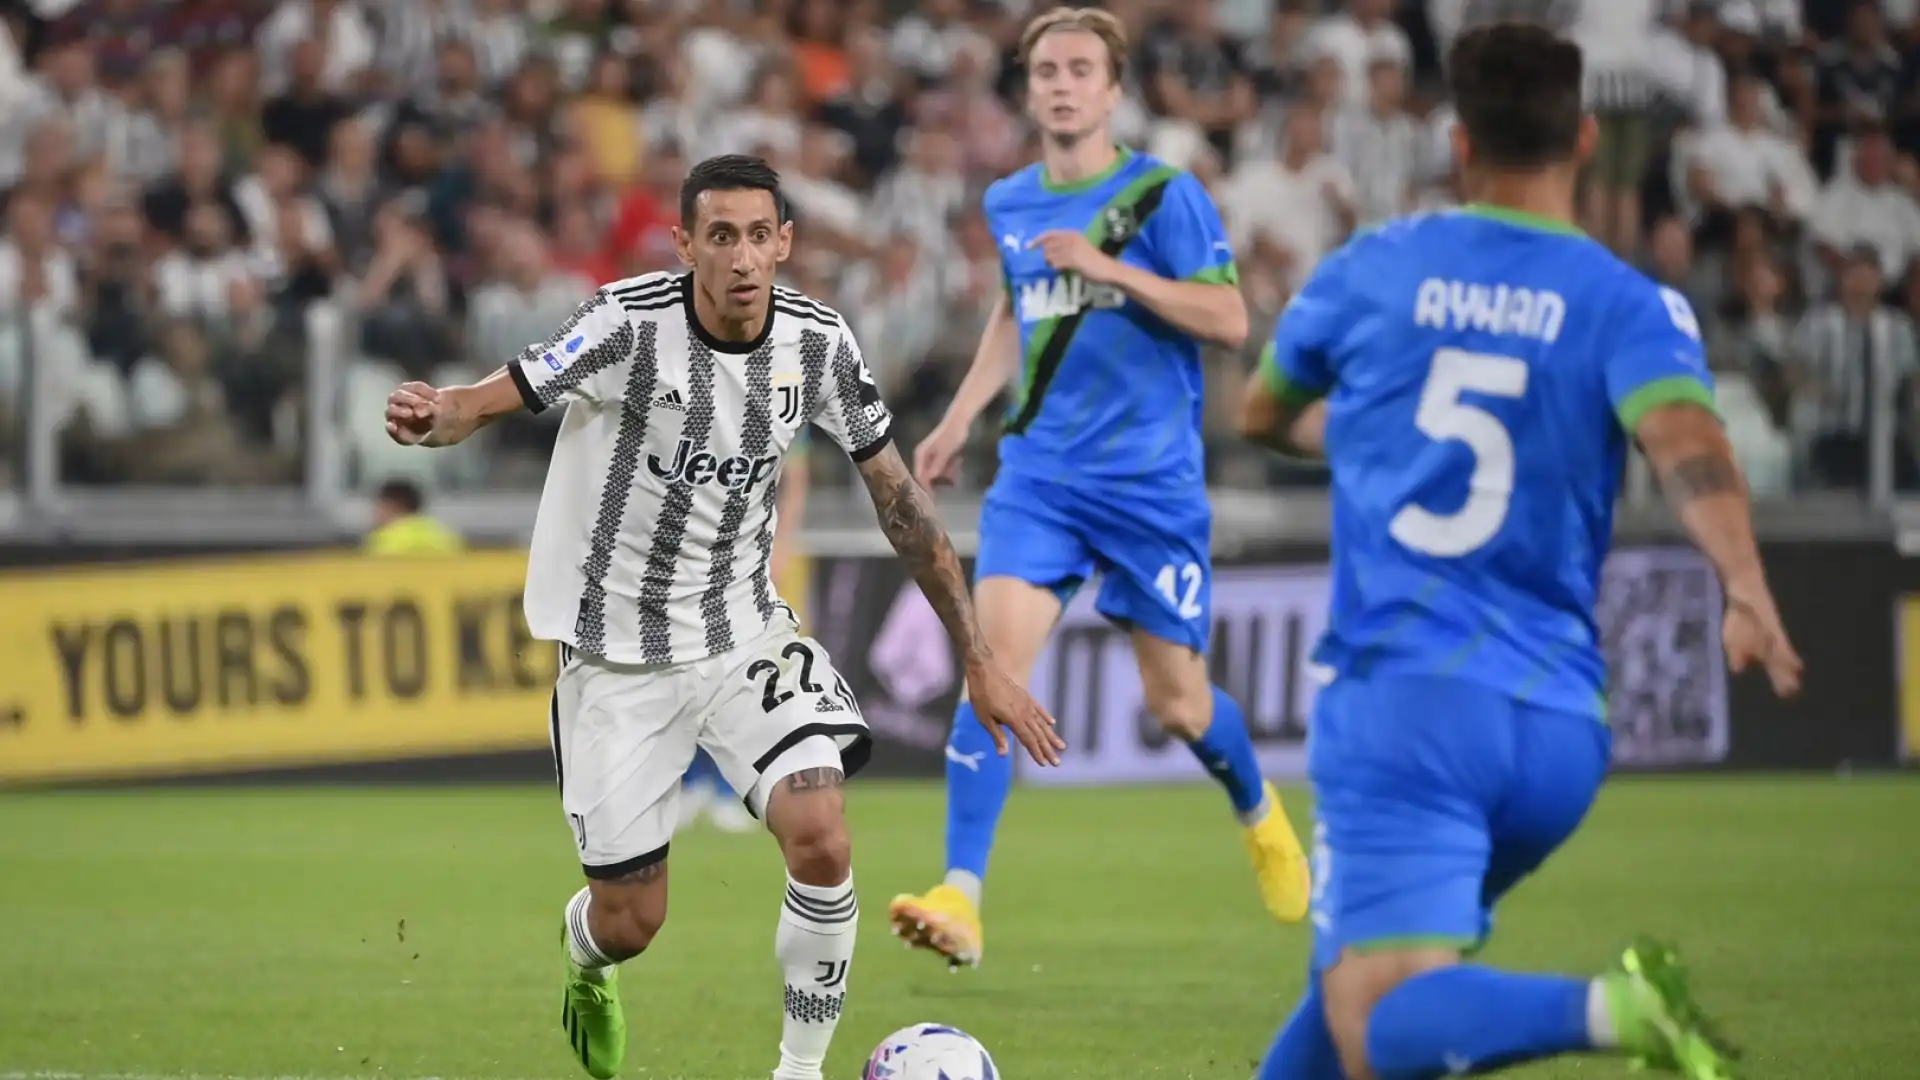 Ayhan 5,5: dopo un buon primo tempo, è colpevole del terzo gol della Juve